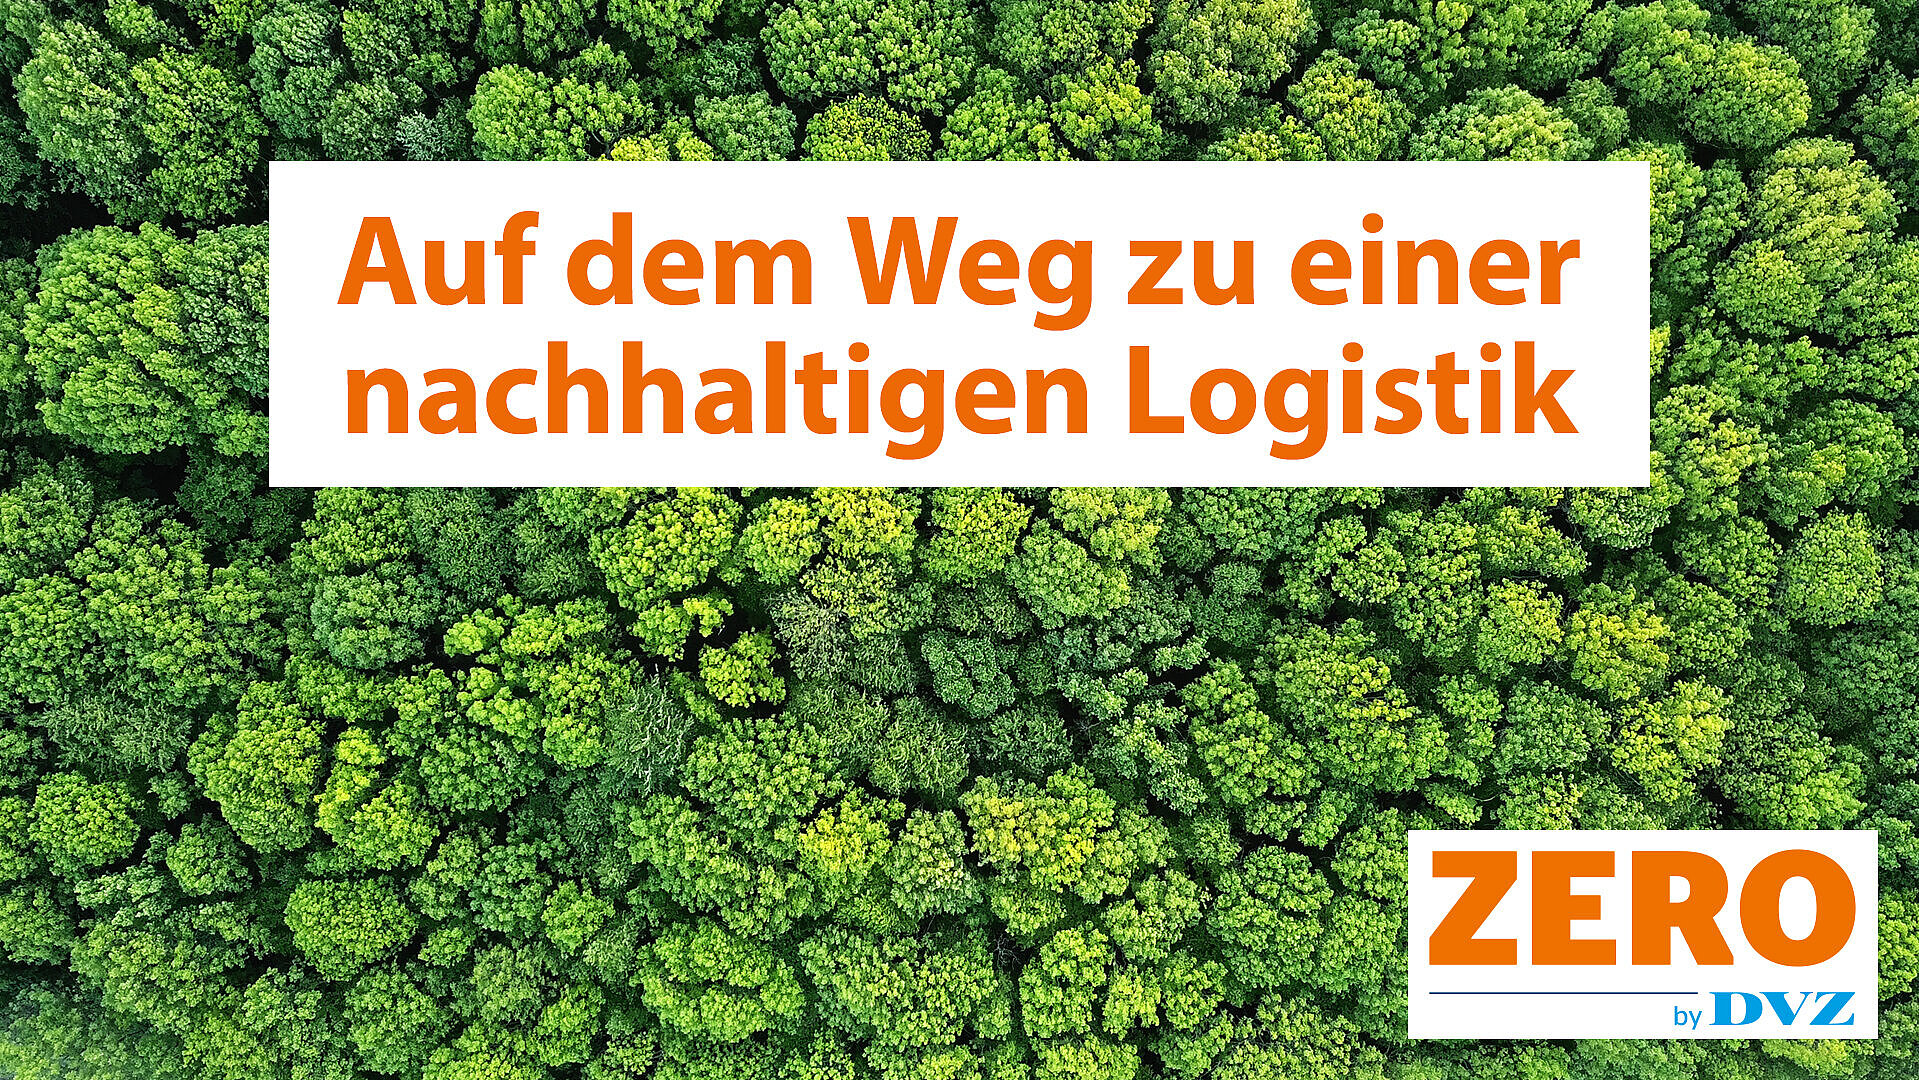 Zero by DVZ - die Plattform zur Nachhaltigkeit in der Transport- und Logistikbranche - www.dvzzero.de